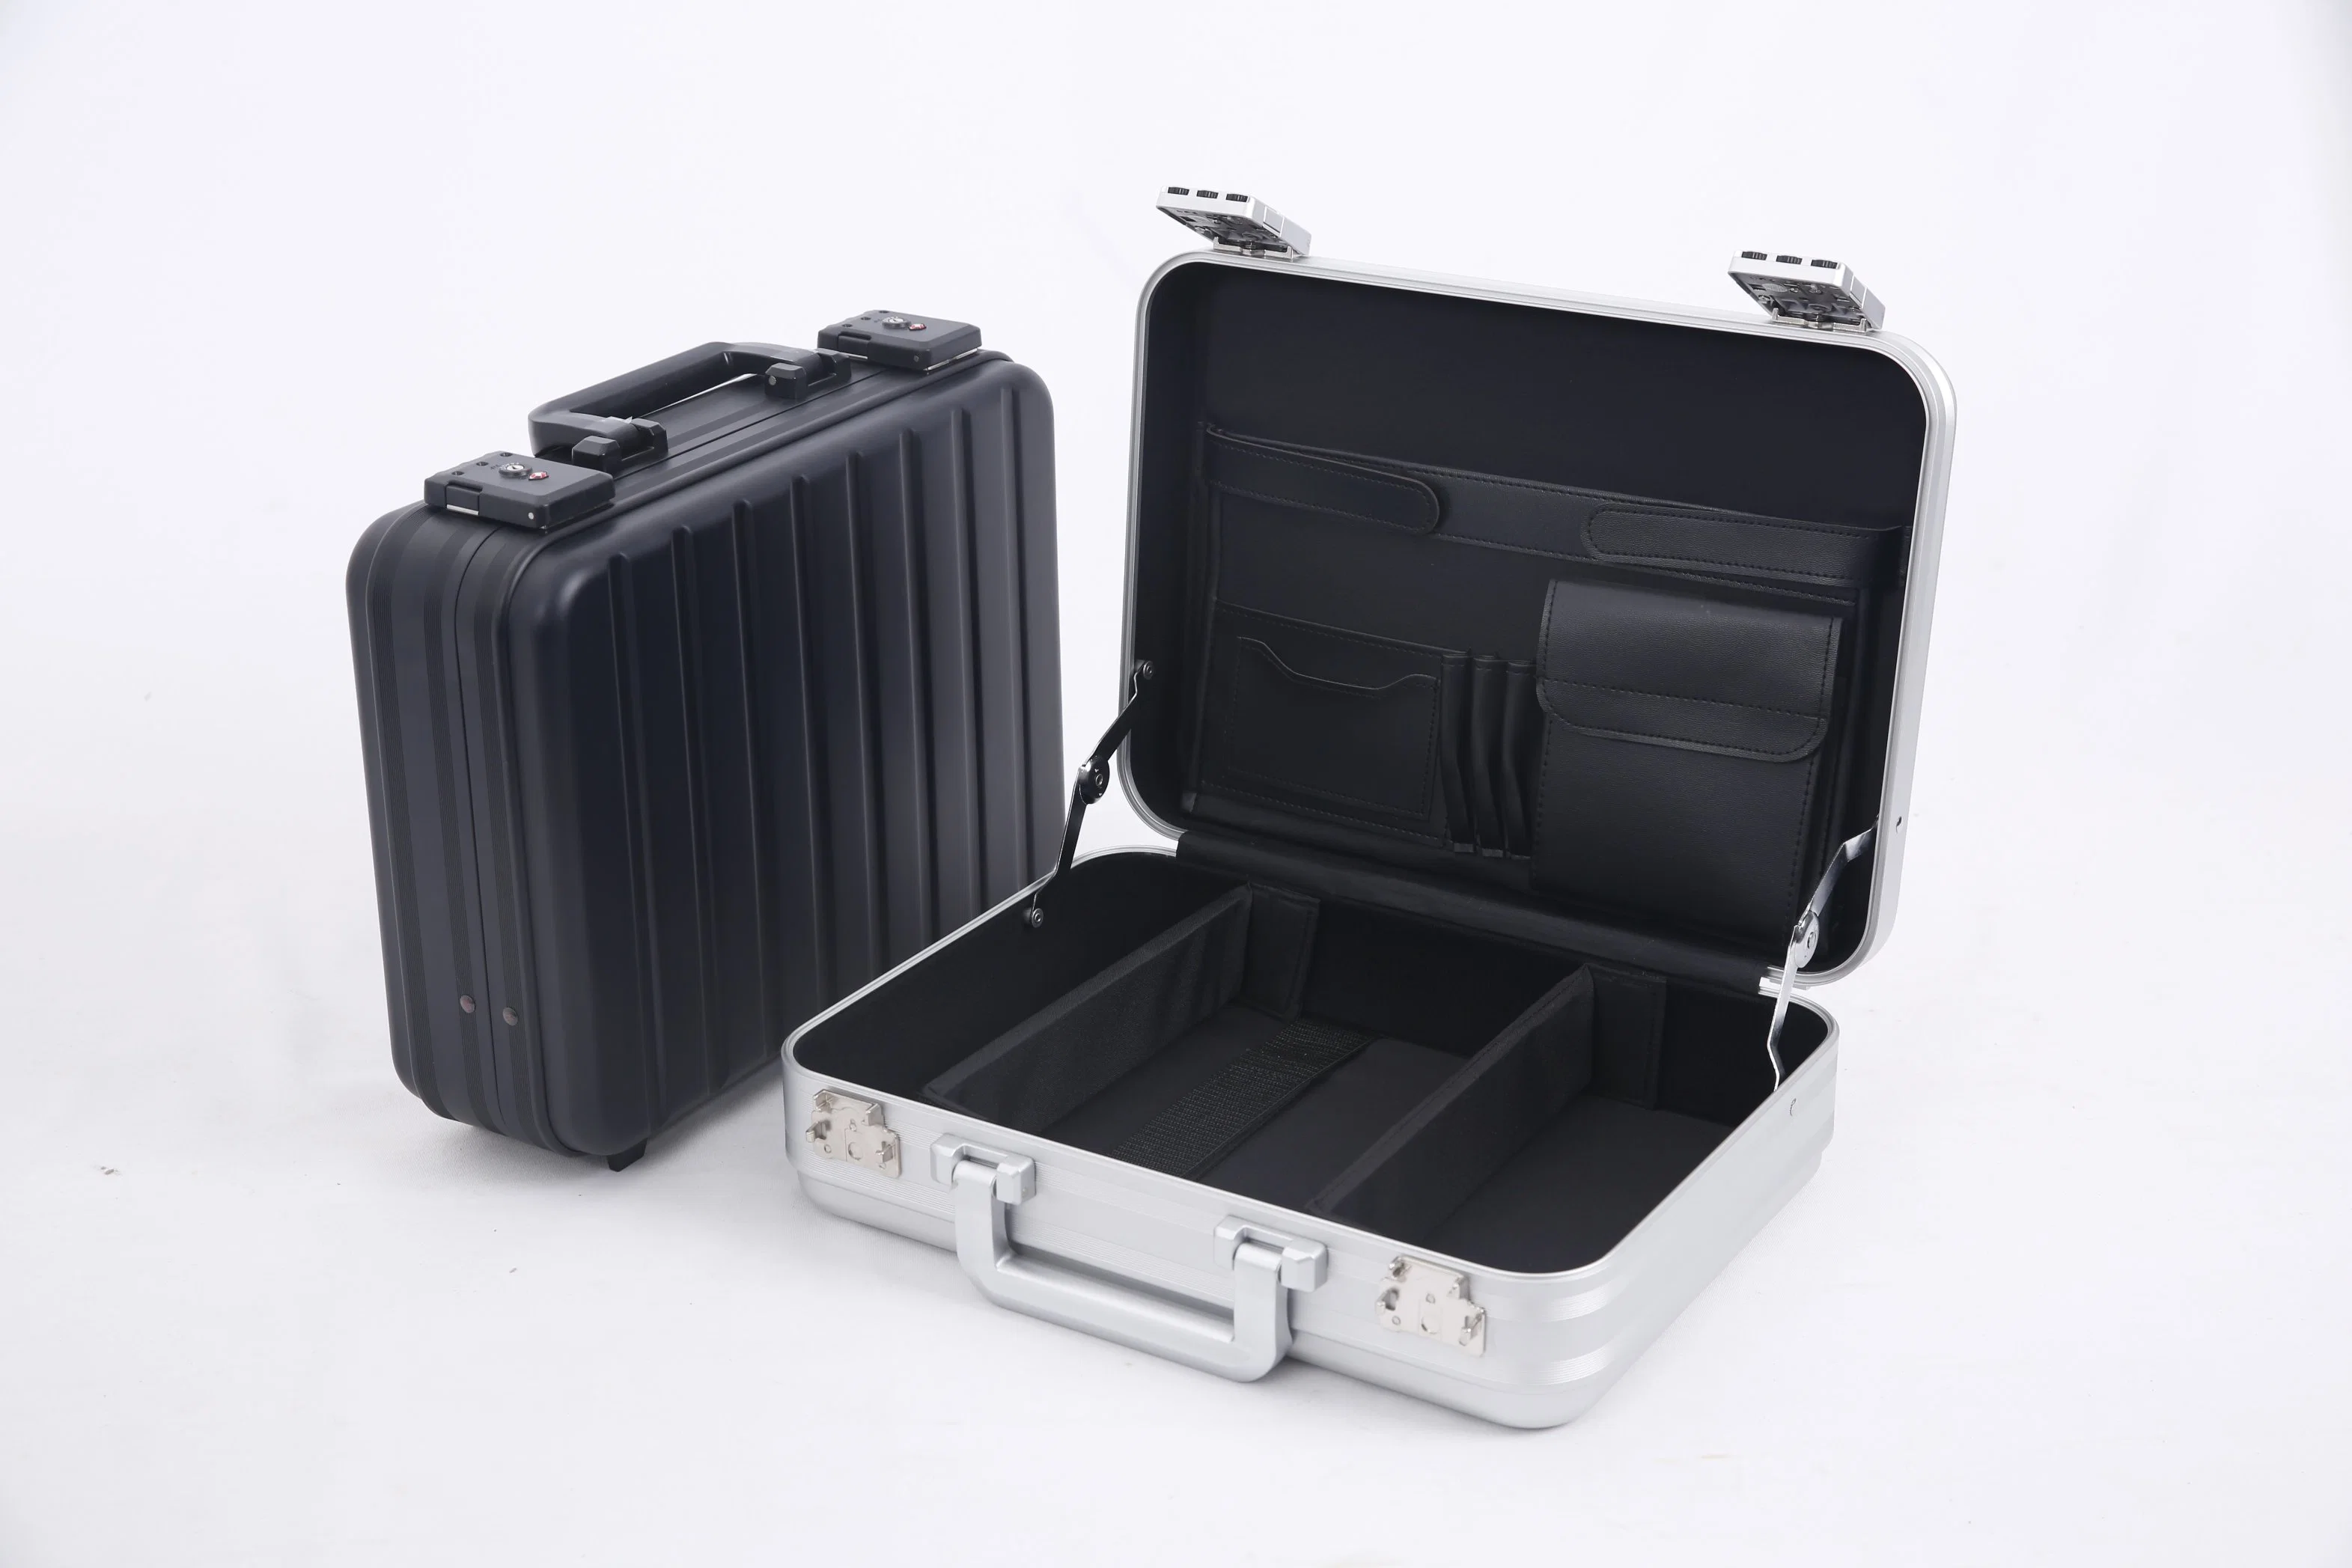 Mallette noire portable en aluminium entièrement étanche, antichoc et sécurisée avec serrure à combinaison.